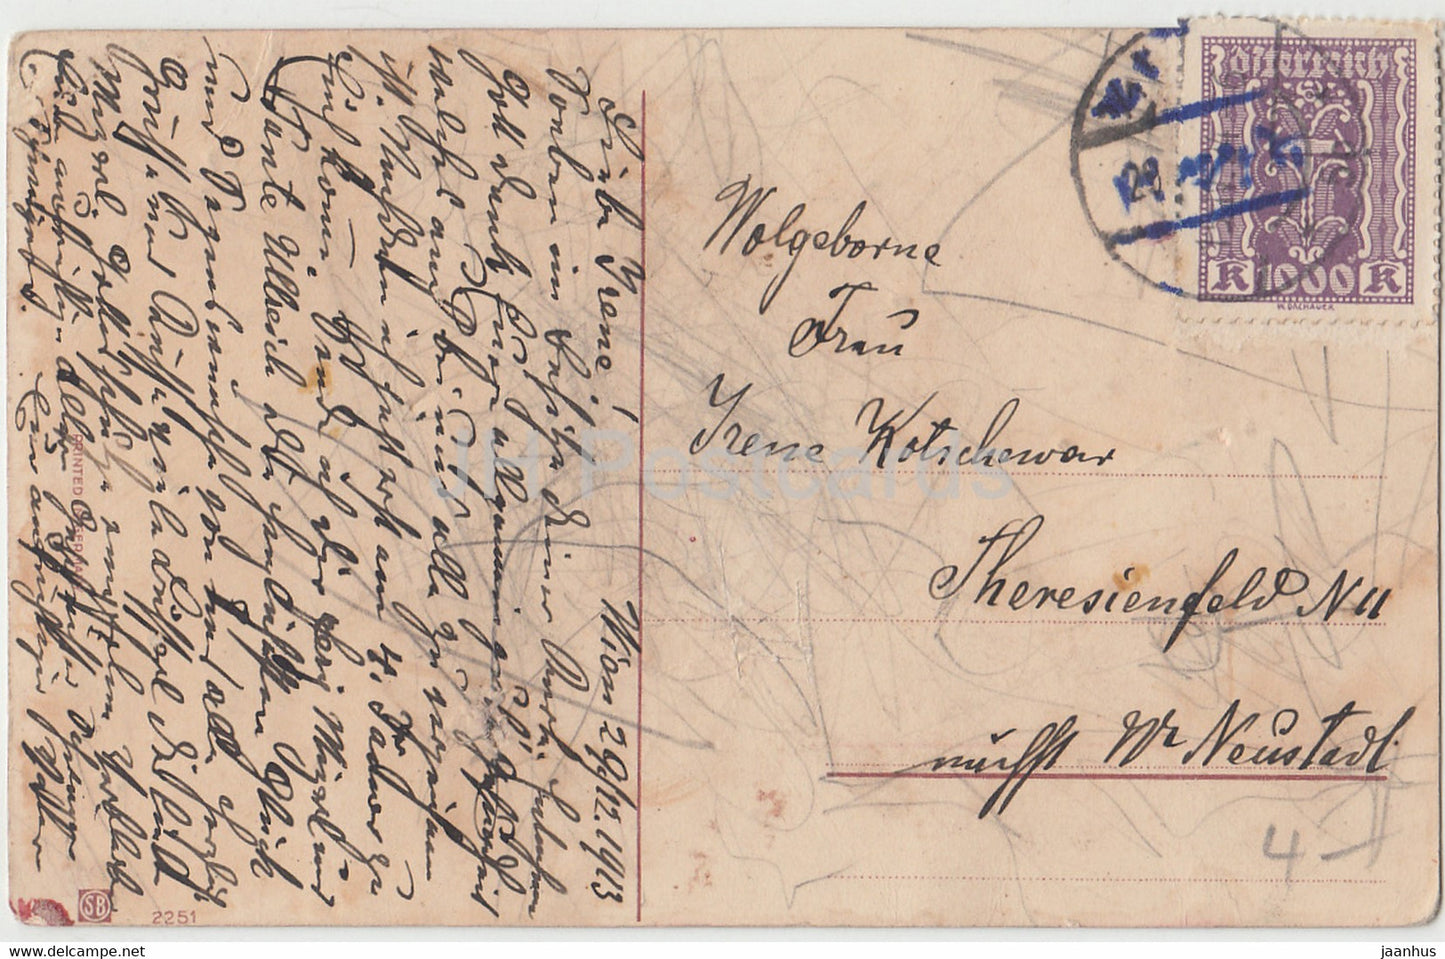 Neujahrsgrußkarte - Viel Glück im Neuen Jahre - Haus - Postbote - SB 2251 - alte Postkarte - 1913 - Deutschland - gebraucht